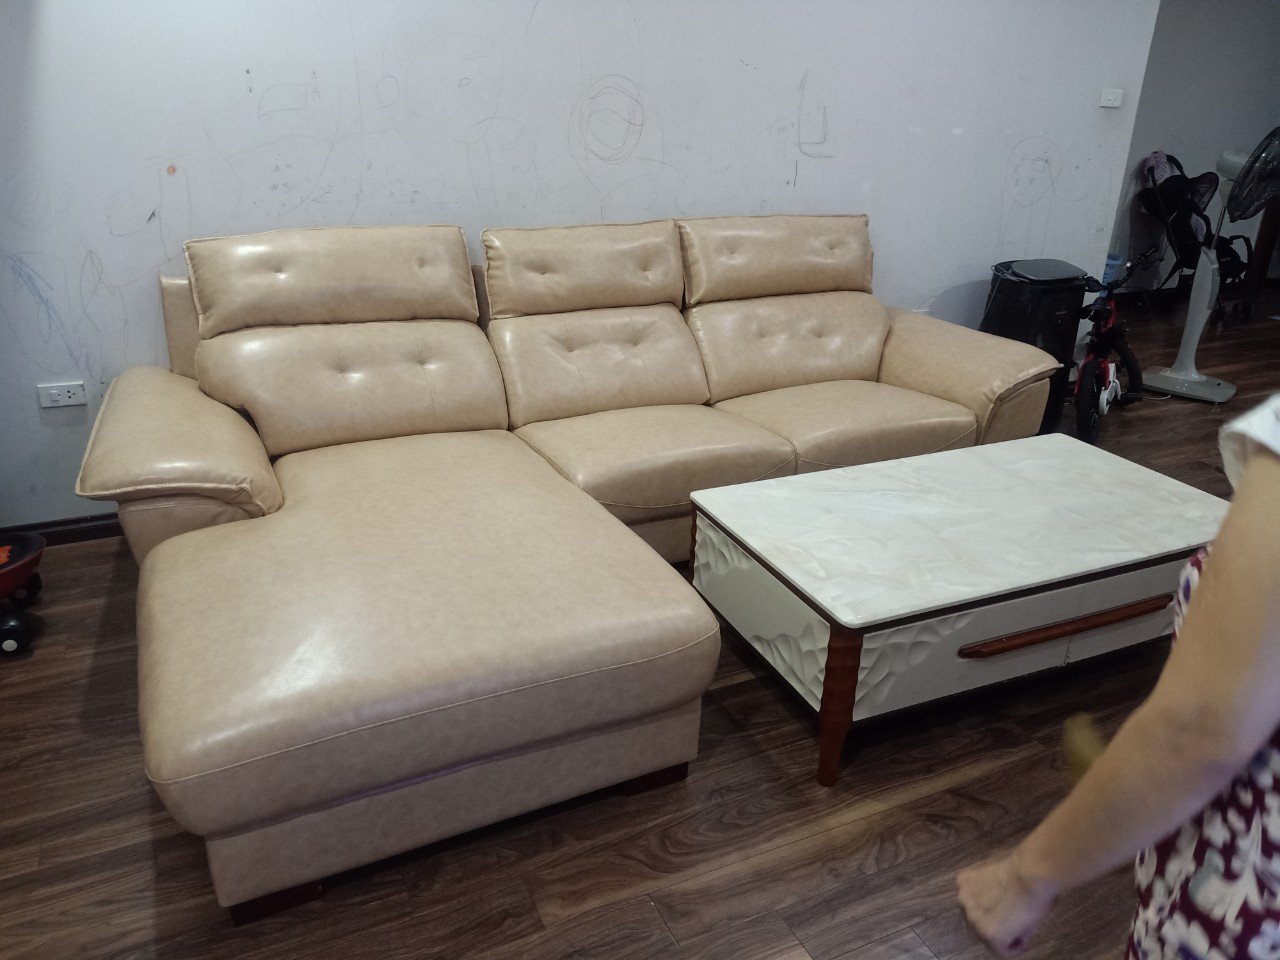 Bọc ghế sofa sần sùi + rạn nứt cho khách hàng tại Phùng Khoang